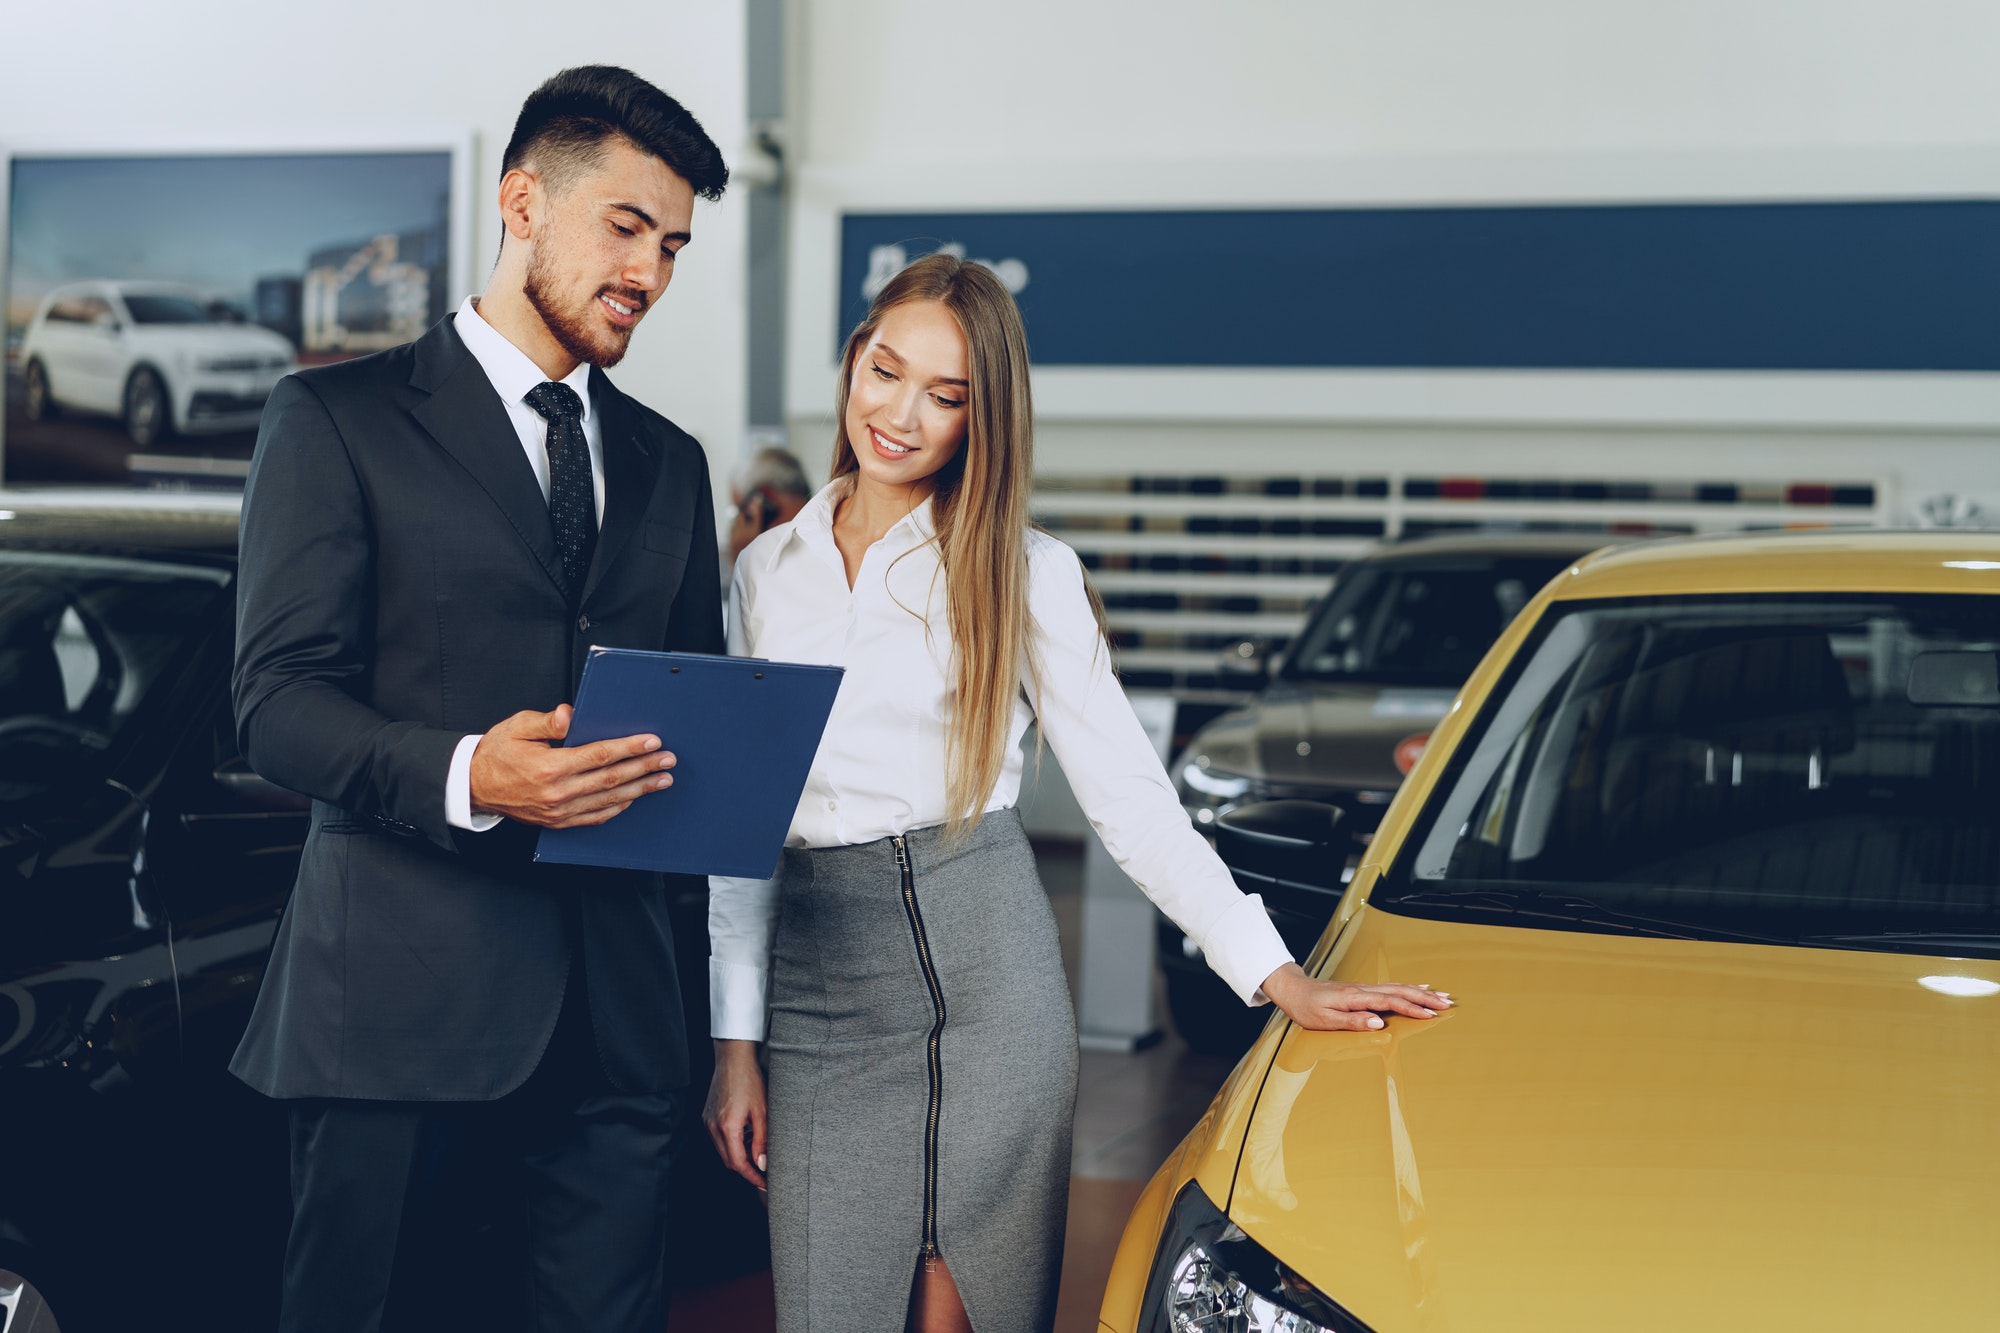 Man car dealer showing a woman buyer a new car